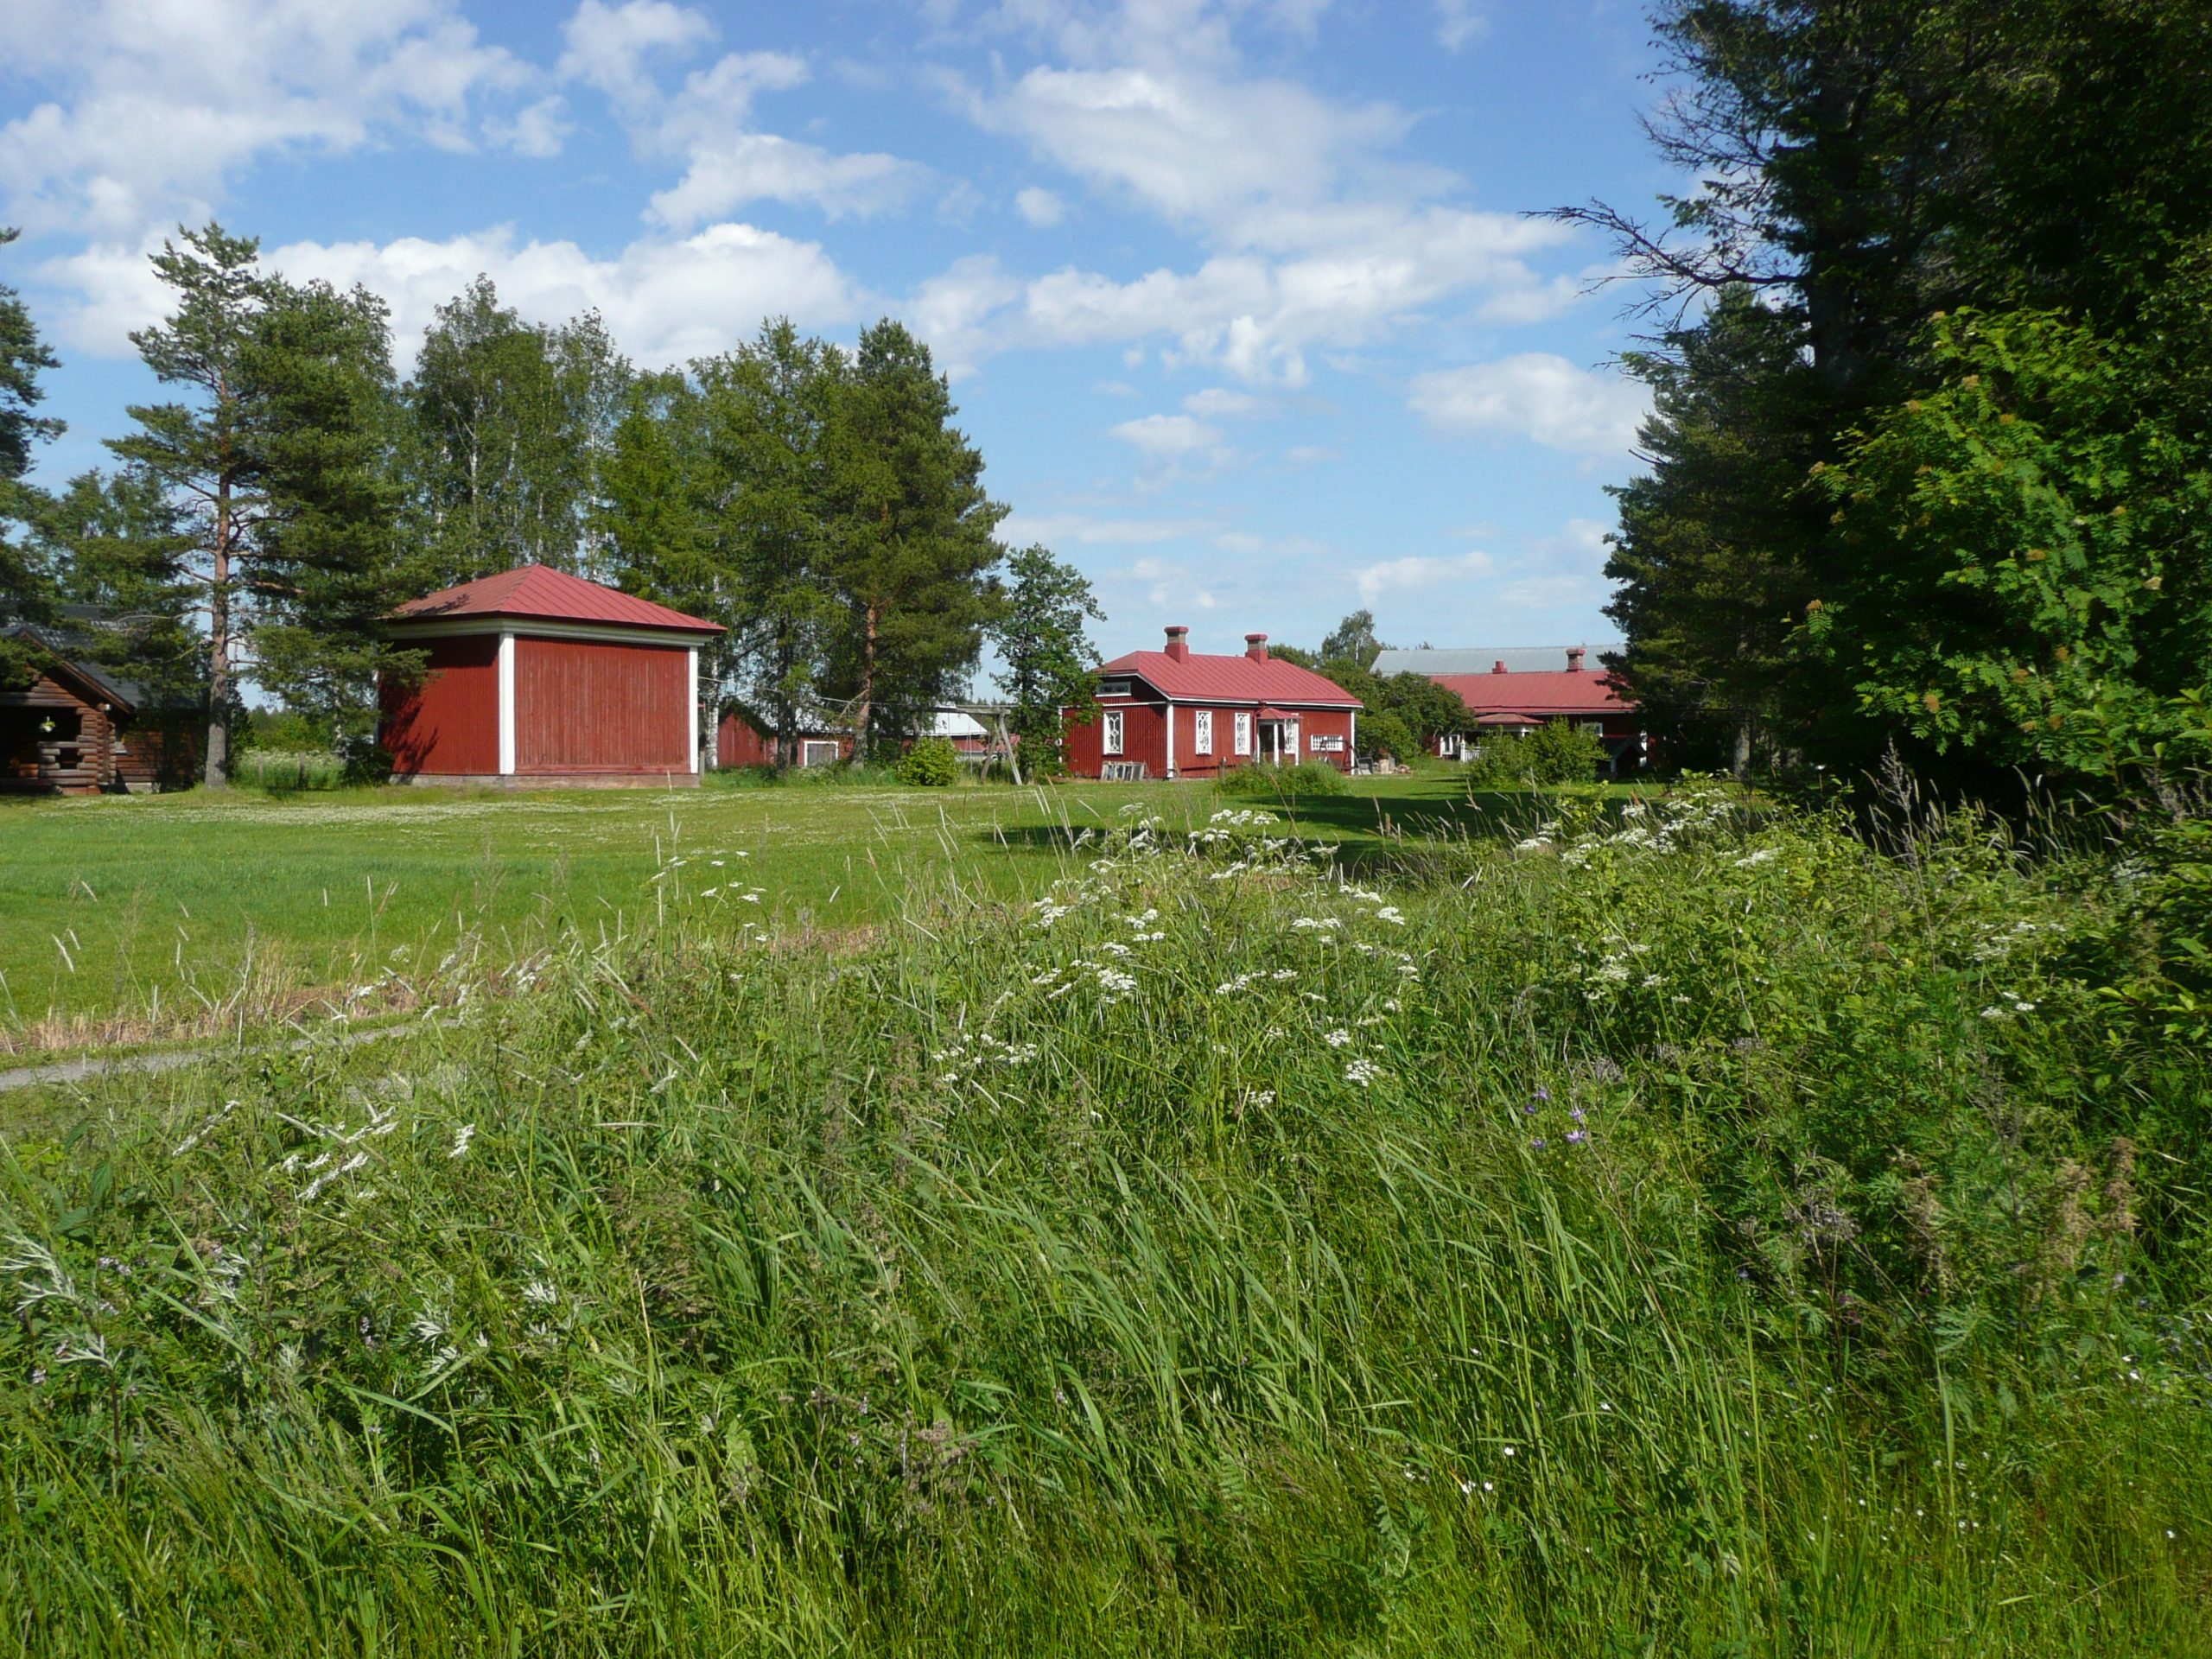 Kuvassa edessä valkoisia kukkia ja virheää ruohikkoa. Taustalla näkyy neljä punaista puurakennusta ja yksi ruskea hirsirakennus. 